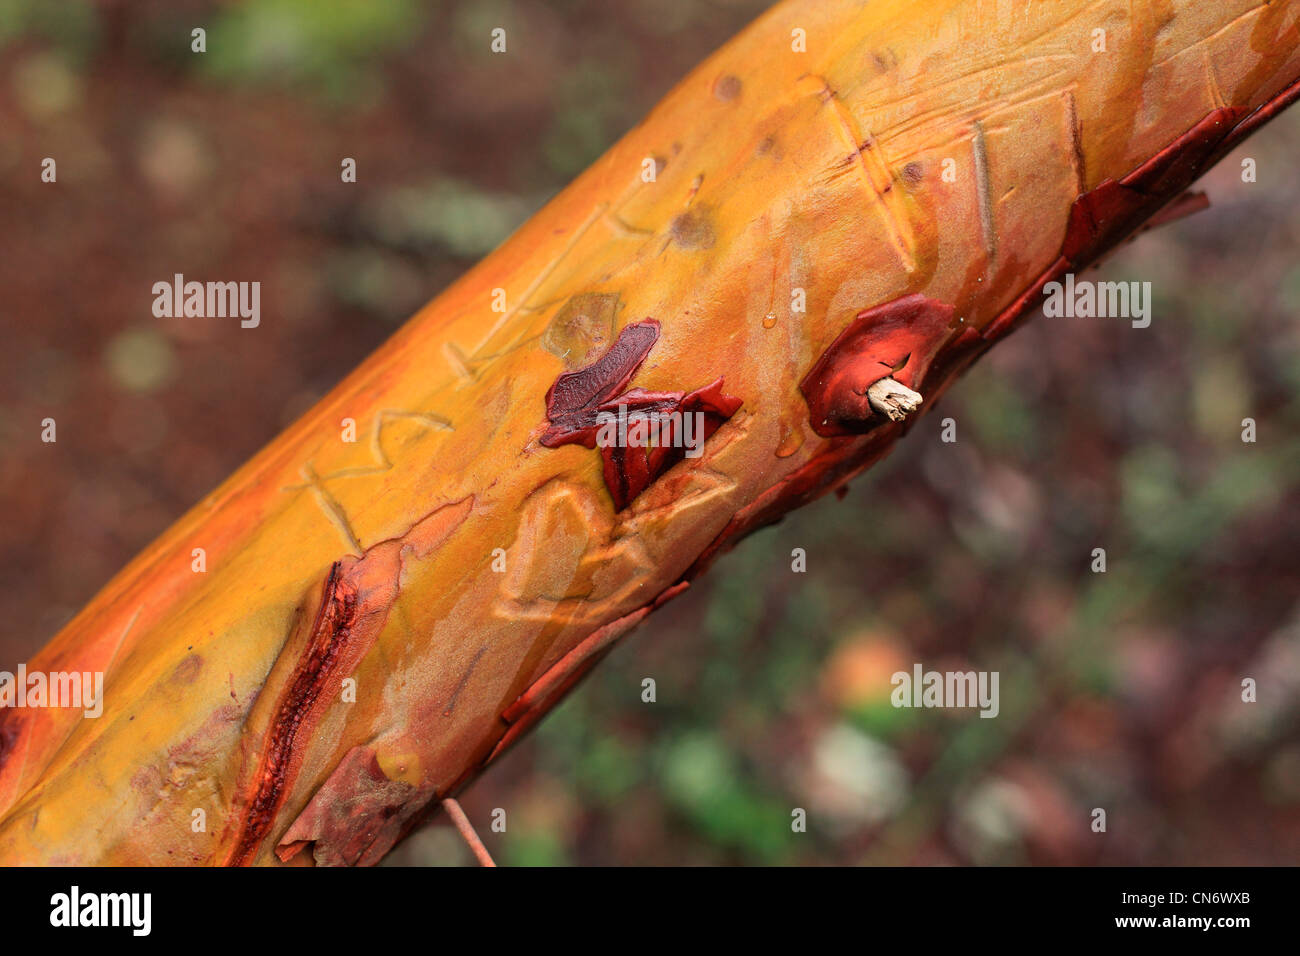 Orange/ jaune et rougeâtre Arbutus Tree branch avec peeling avec écorce nom personne sculptée dans la branche d'arbre Banque D'Images